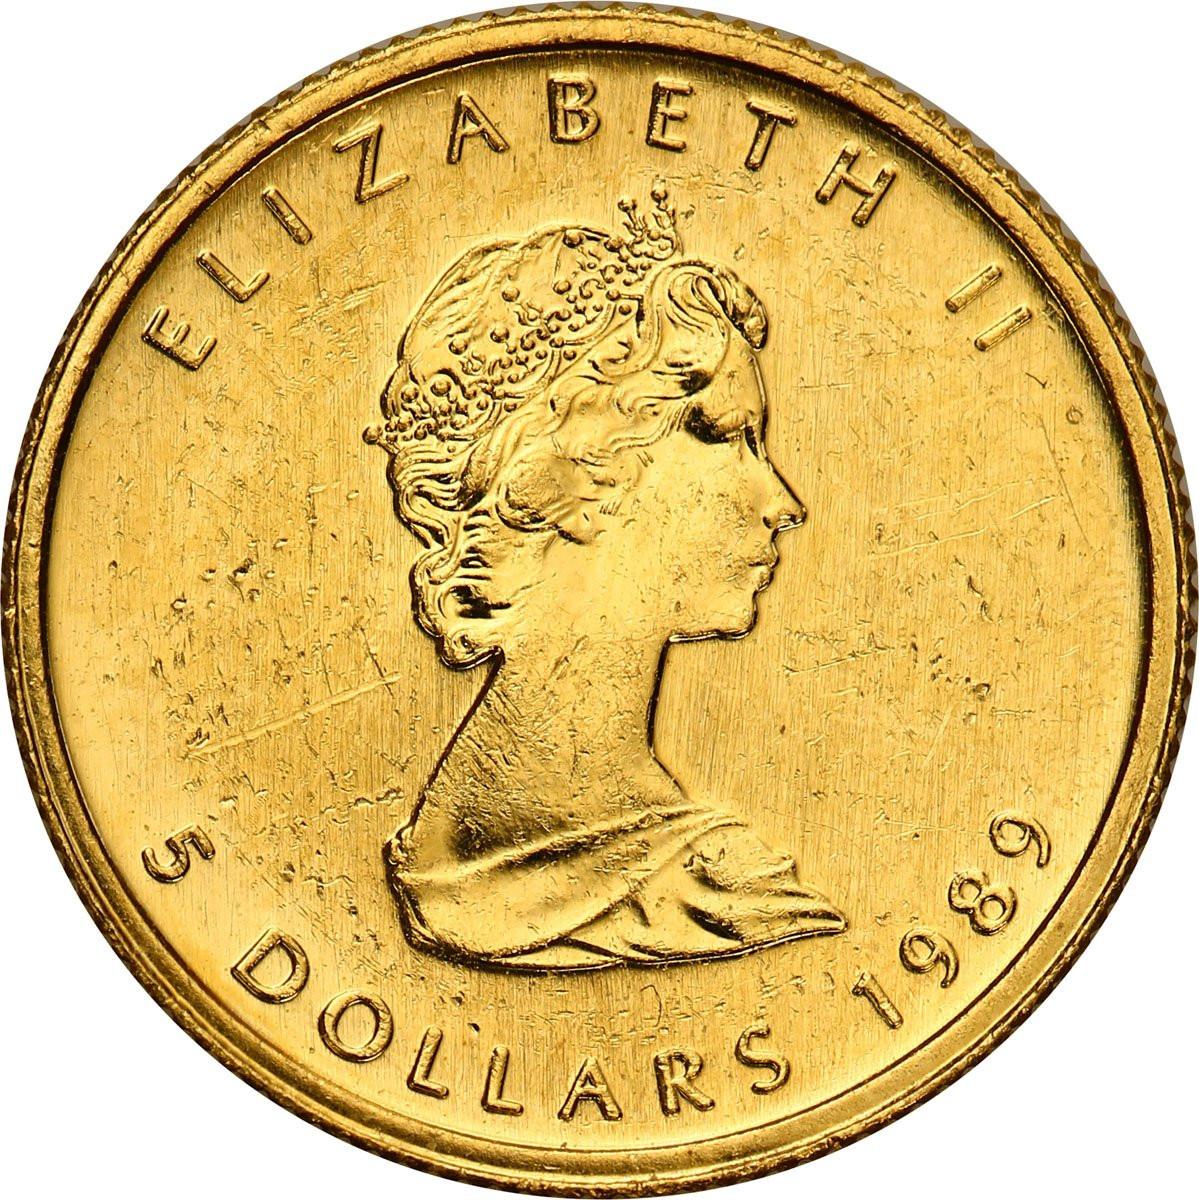 Kanada 5 dolarów 1989 liść klonowy 1/10 uncji złota